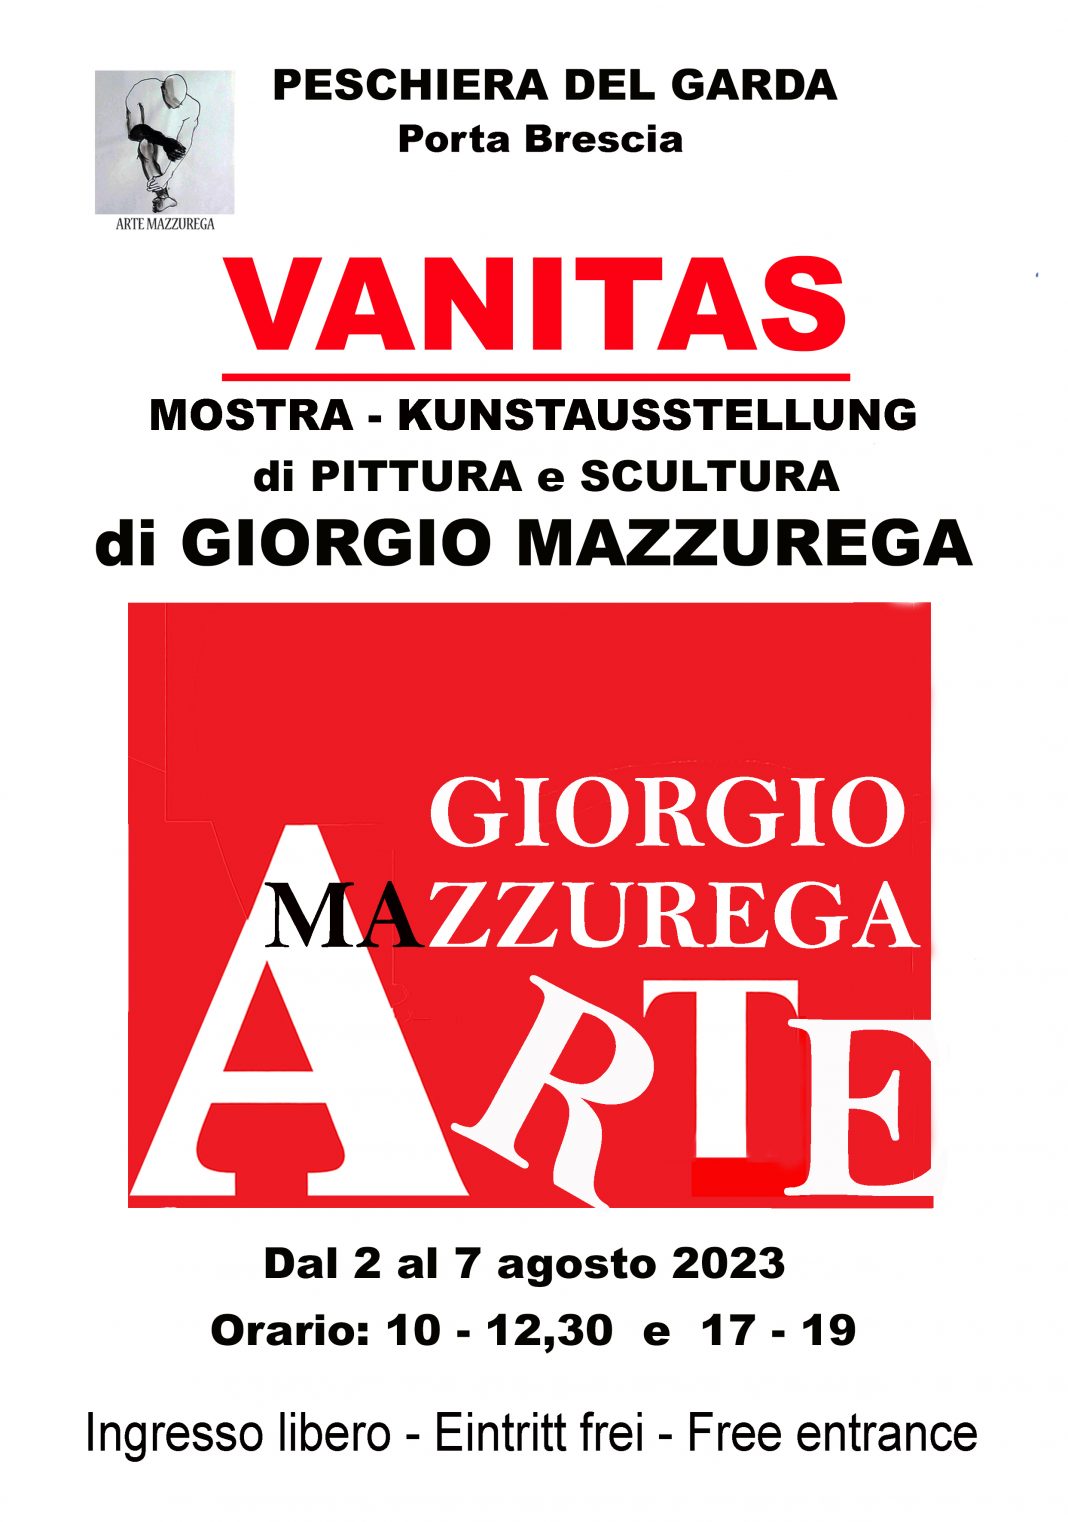 Giorgio Mazzuregahttps://www.exibart.com/repository/media/formidable/11/img/f79/Peschiera-2023-A4-copia-1068x1522.jpg